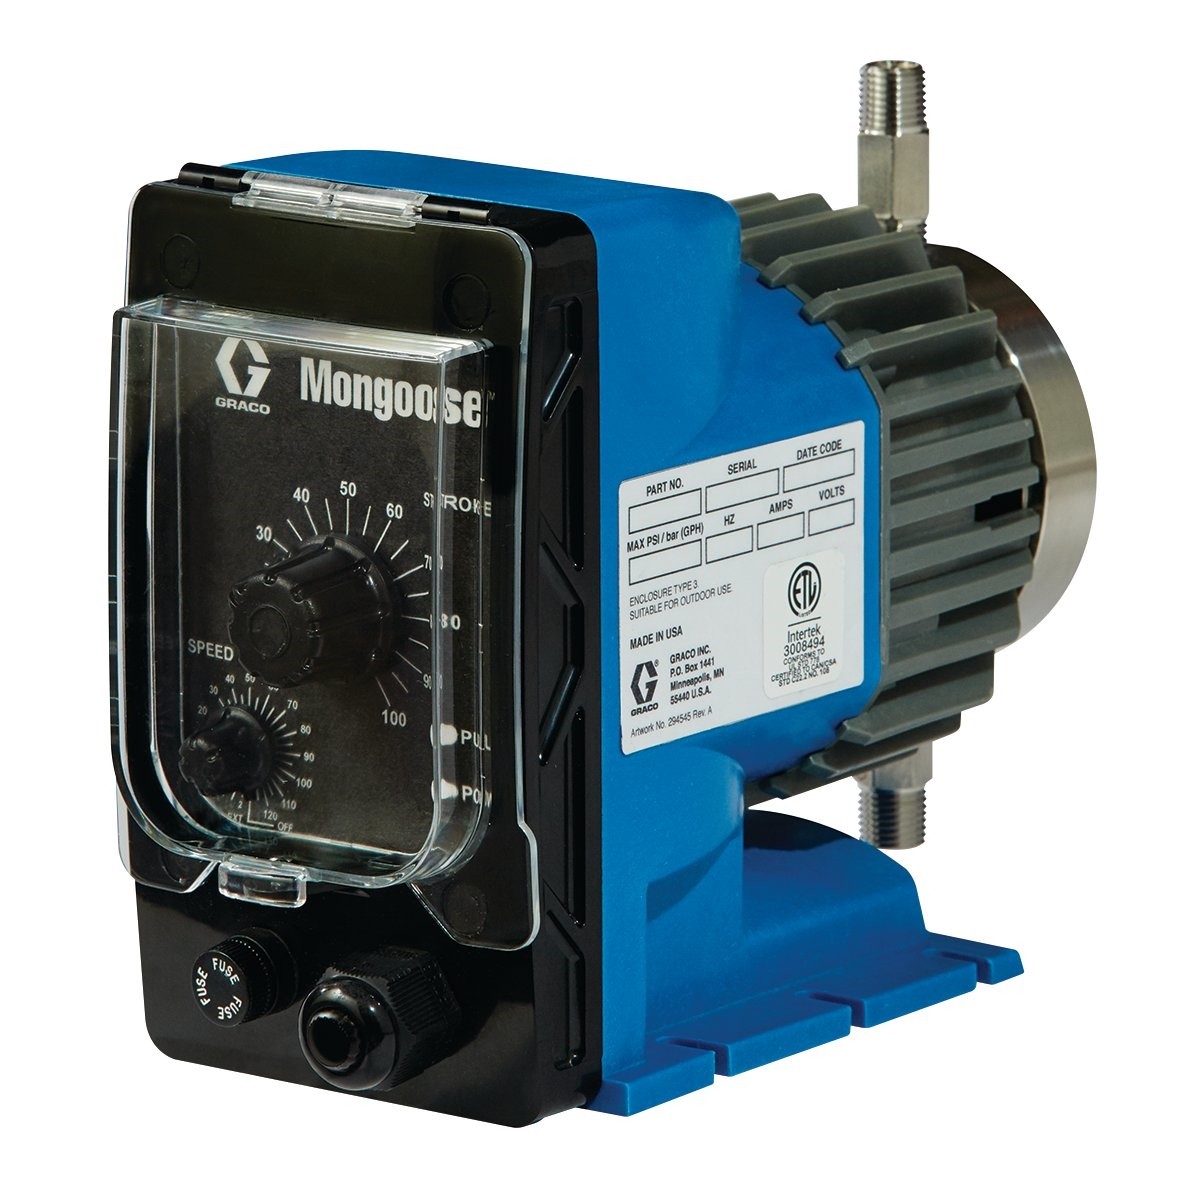 Mongoose™ Stainless Steel Metering Pump, 12 VDC, 10 140 PSI